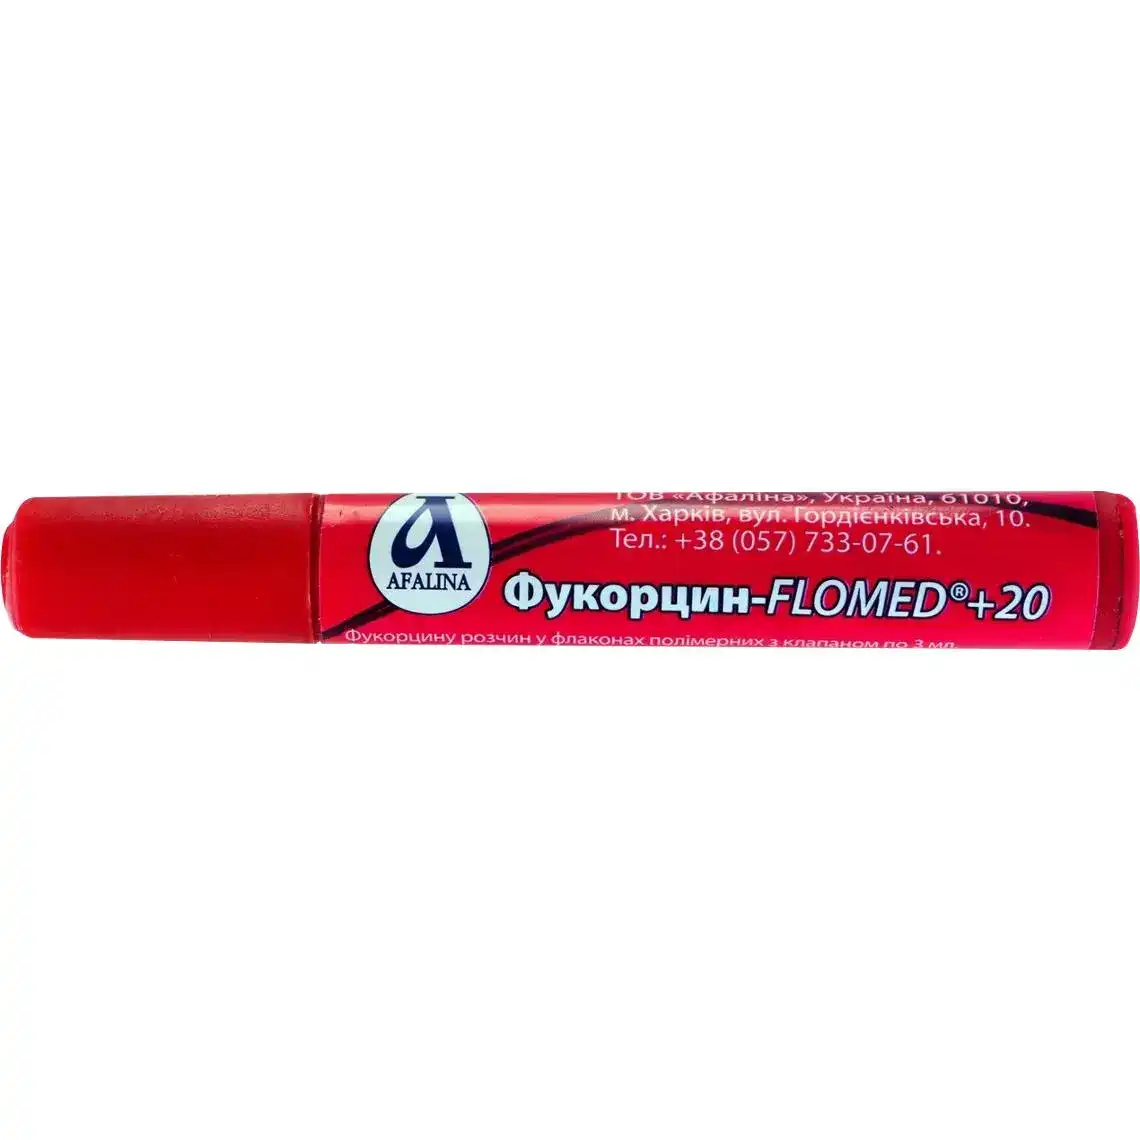 Антисептик Flomed Фукорцин-маркер 3 мл